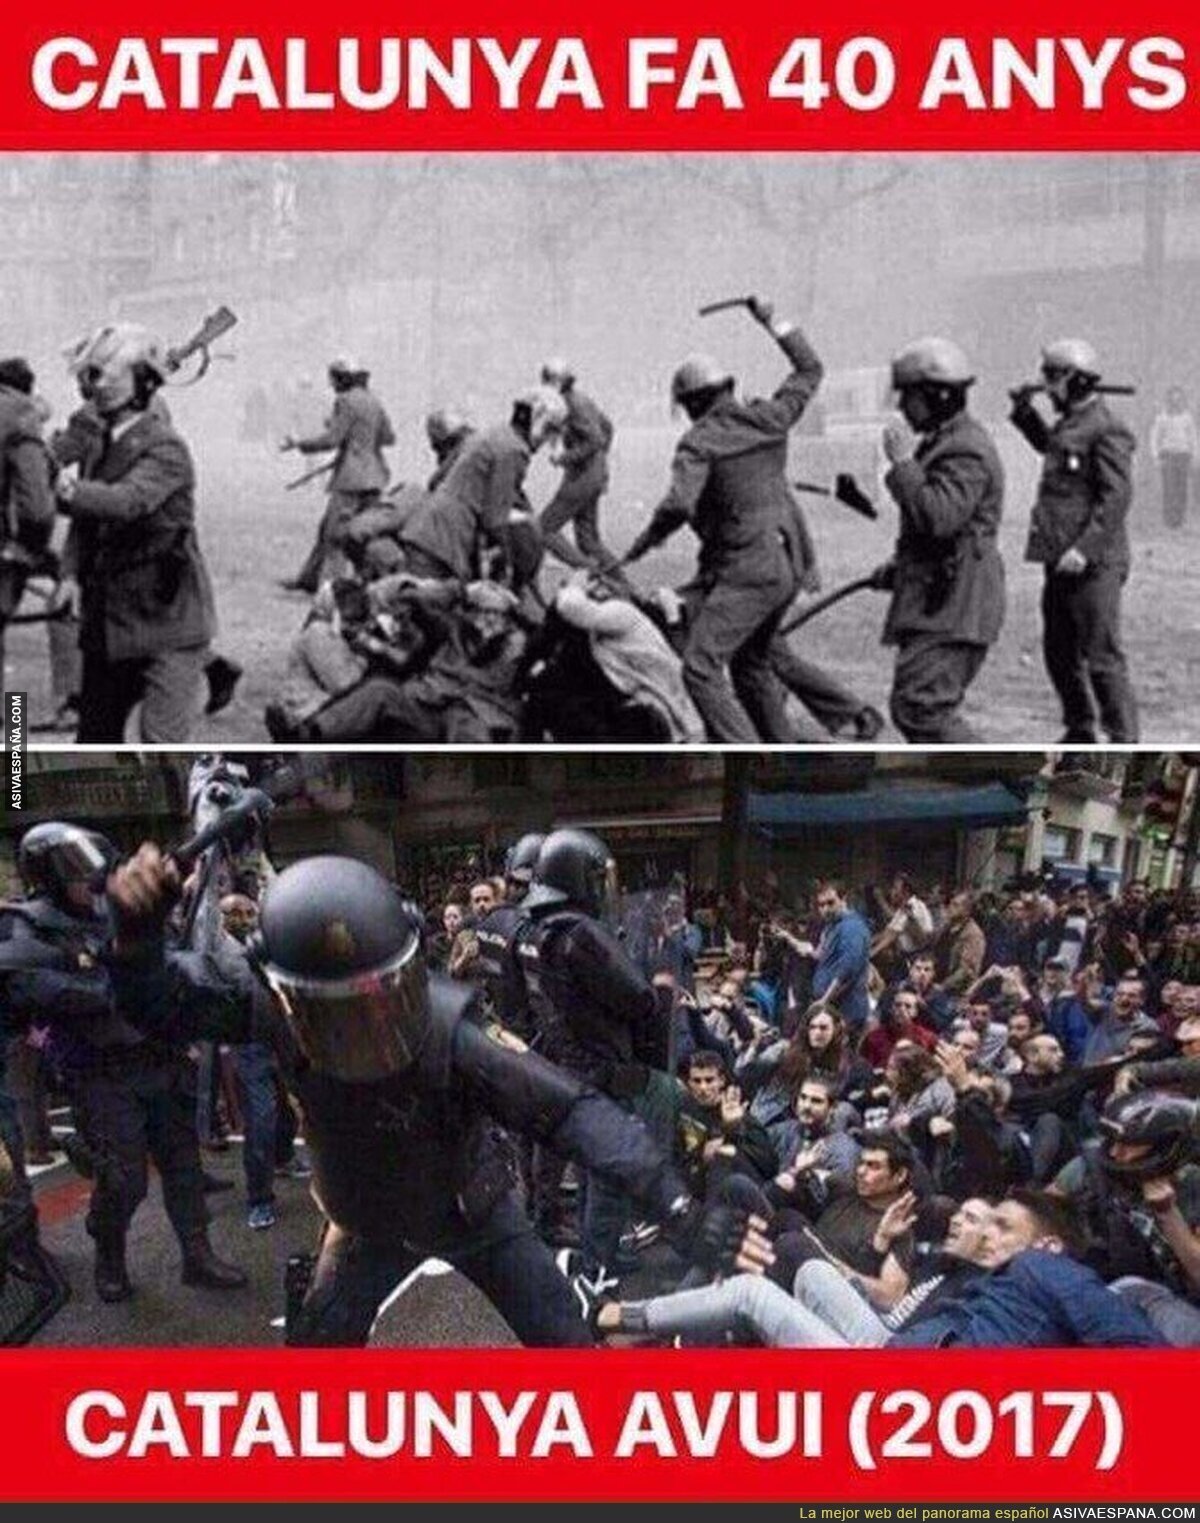 La Cataluña de hace 40 años y la de ahora